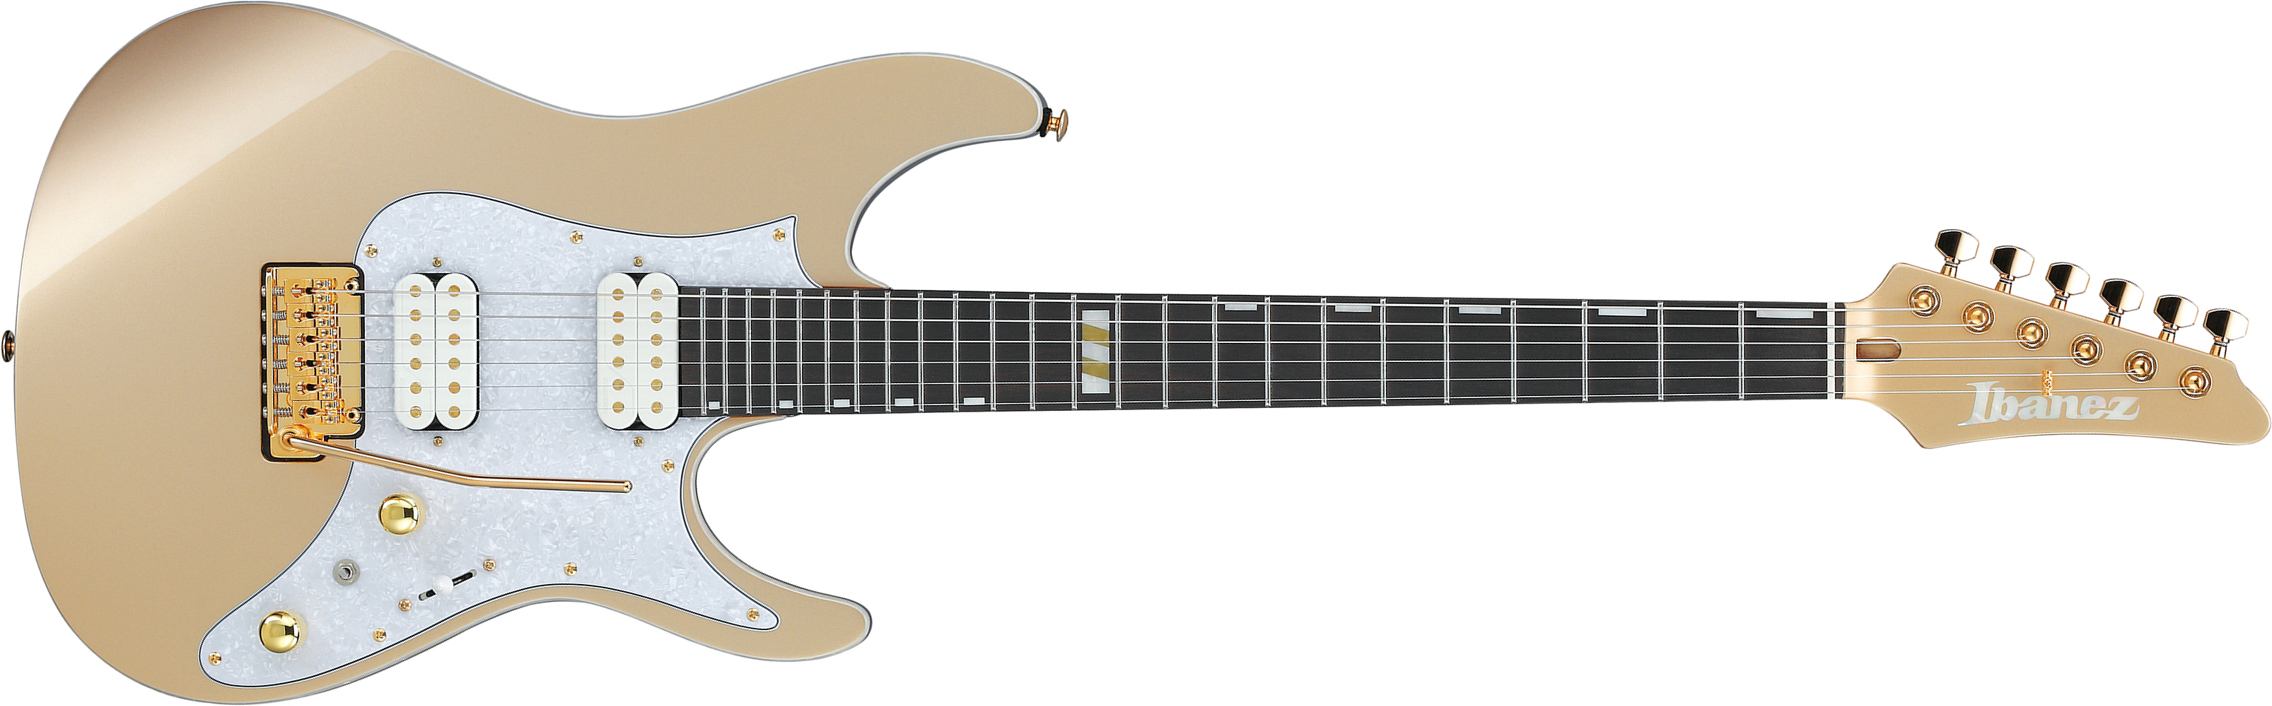 Ibanez Scott Lepage Krys10 Premium Signature 2h Fishman Fluence Trem Eb - Gold - Str shape electric guitar - Main picture